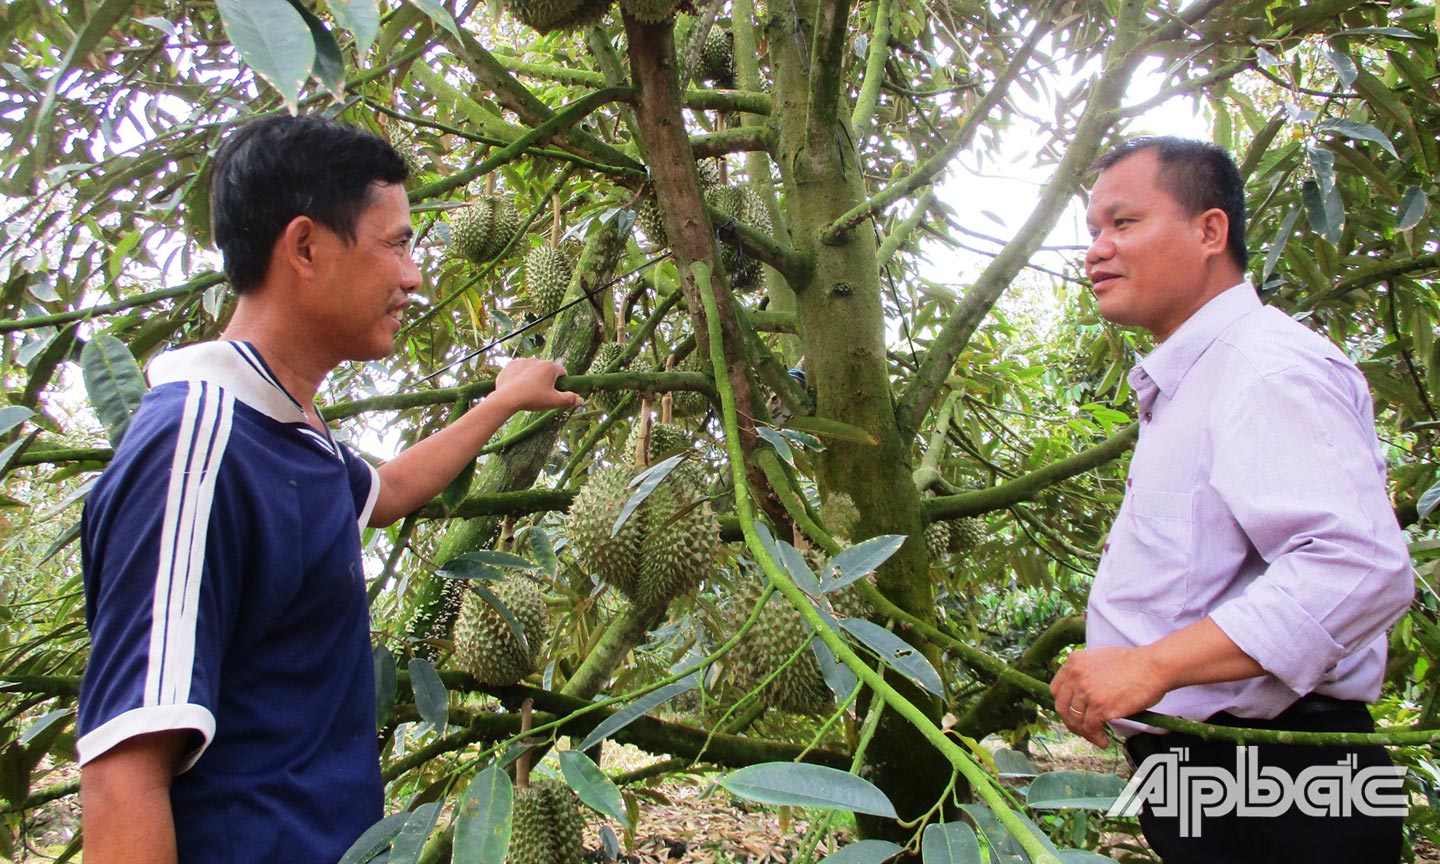 5 năm qua, huyện Cai Lậy phát triển diện tích vườn chuyên canh cây ăn trái ở các xã phía Nam Quốc lộ 1 theo quy hoạch; trong đó có trên 9.000 ha trồng cây sầu riêng trong tổng số 15.000 ha vườn cây ăn trái. 